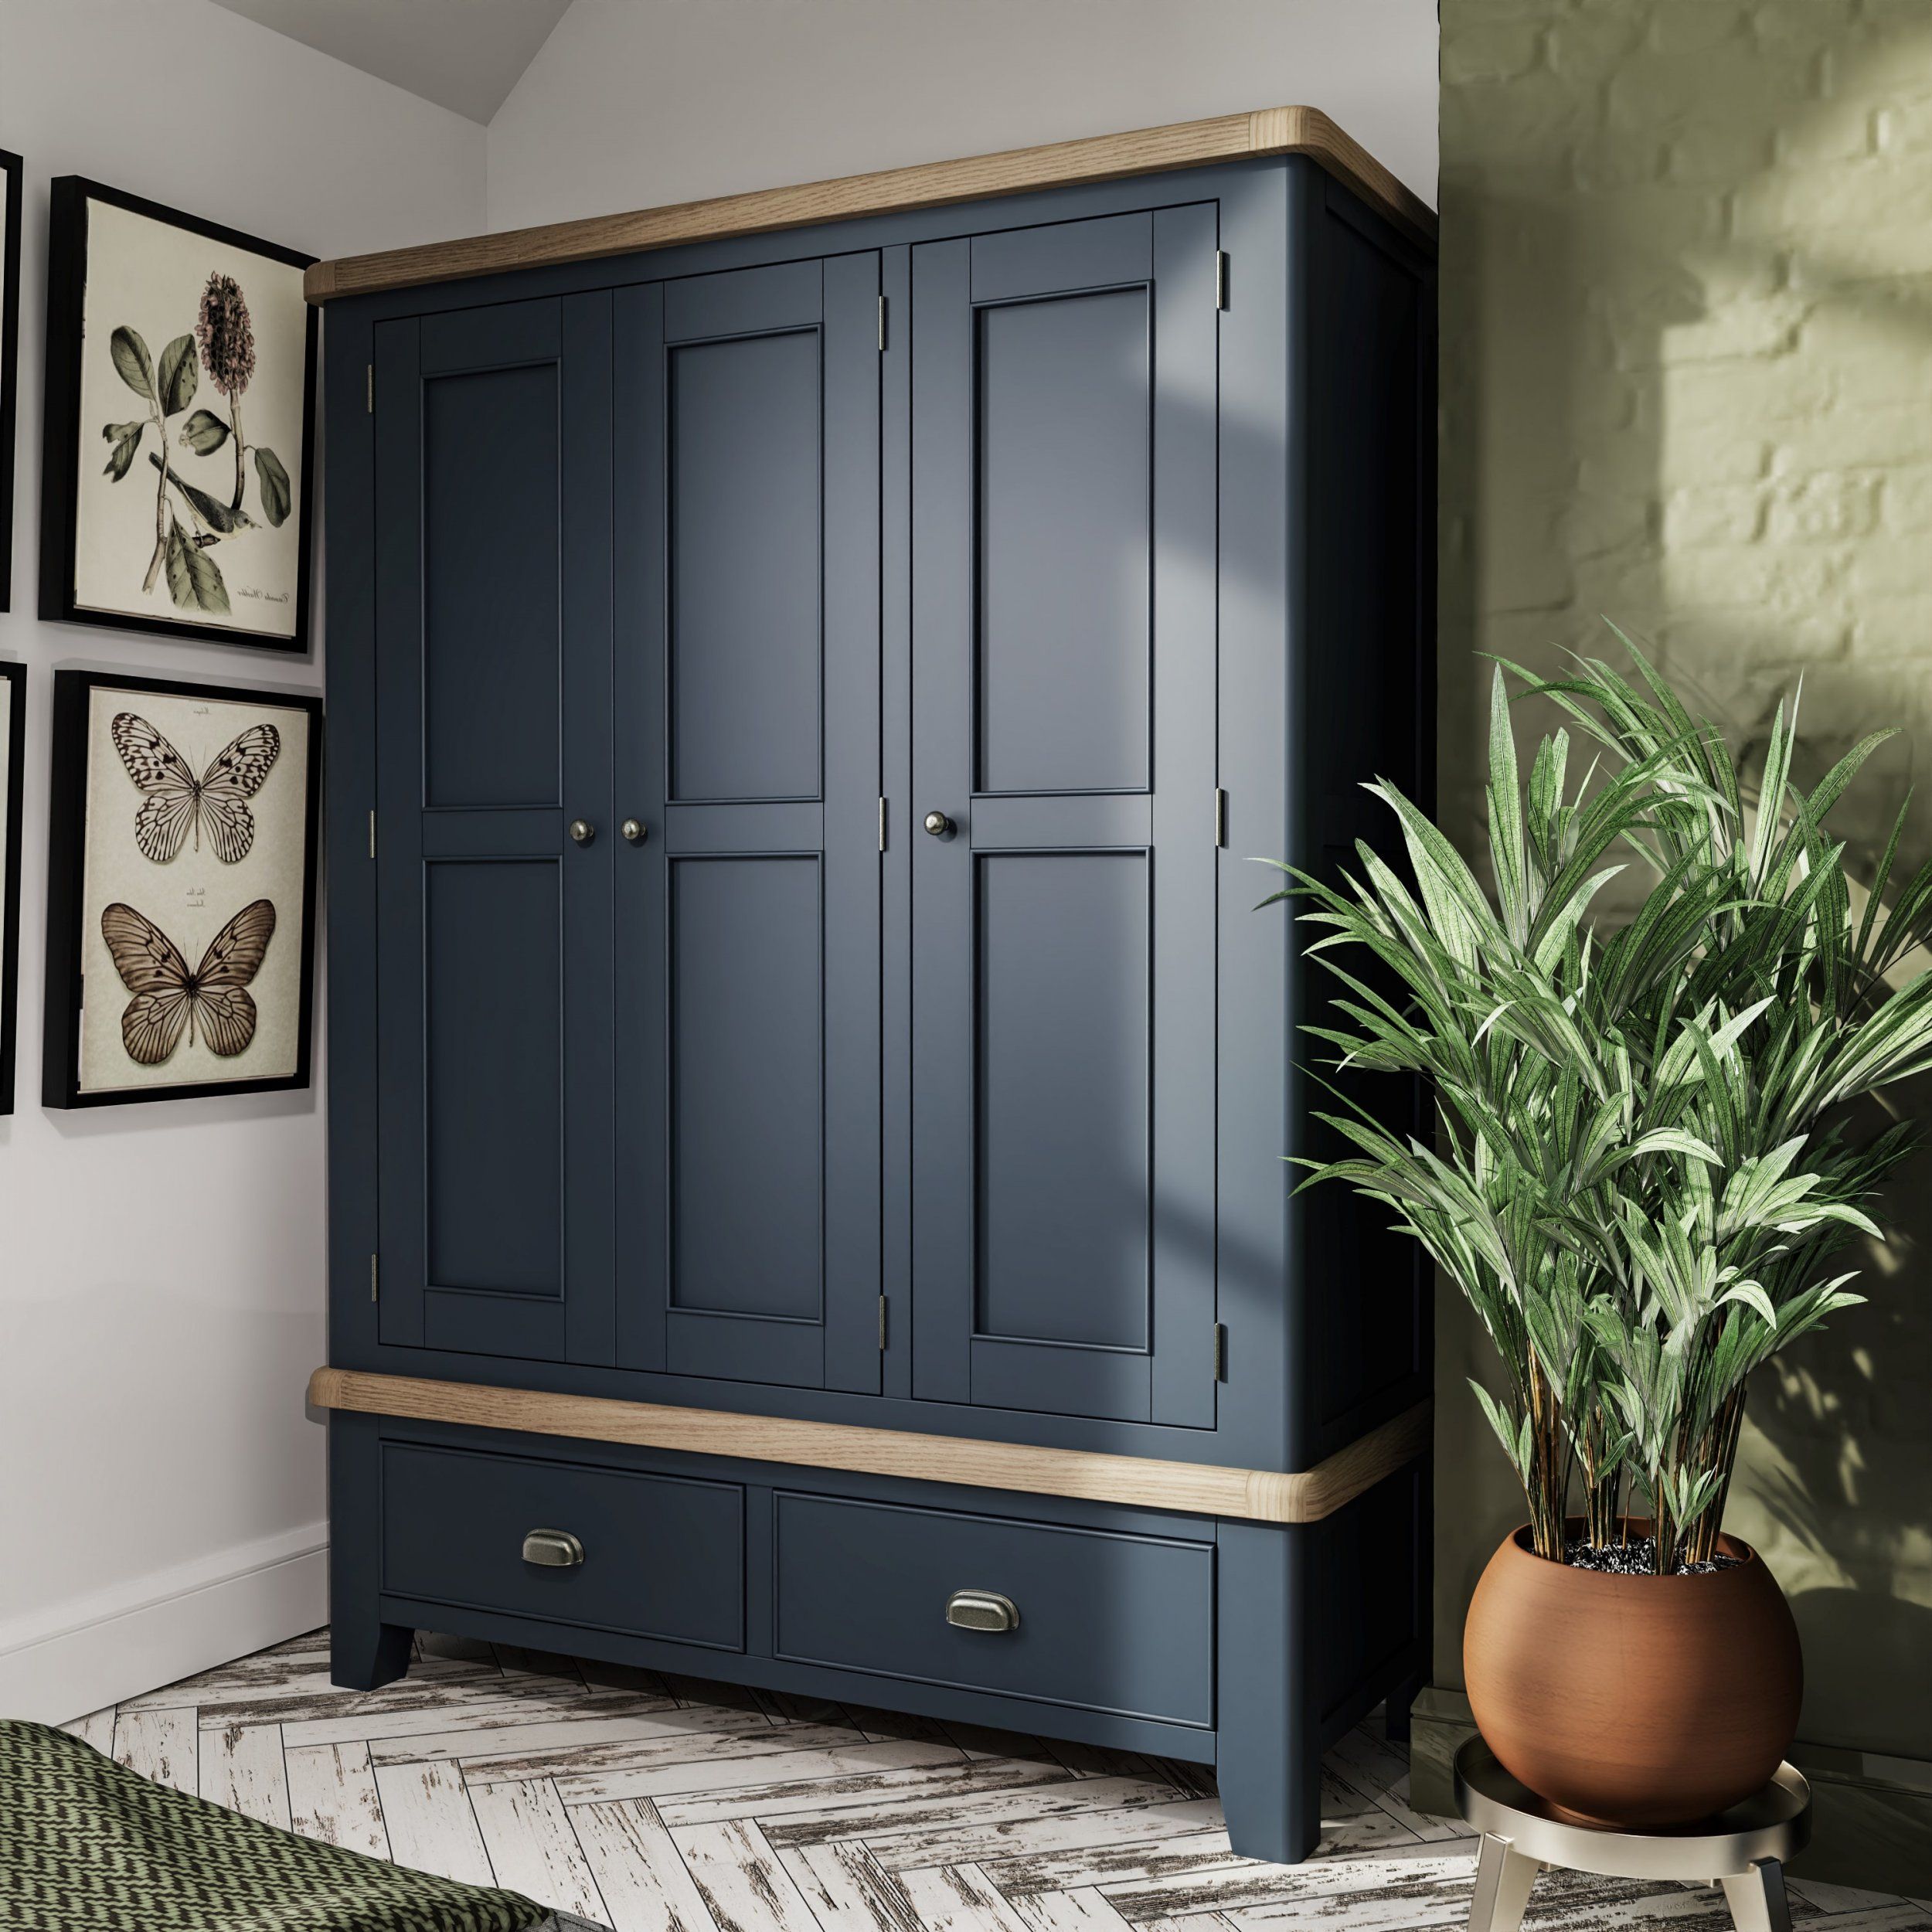 Haxby Oak Painted Bedroom 3 Door Wardrobe – Blue | The Clearance Zone In 3 Door Wardrobes (Photo 5 of 15)